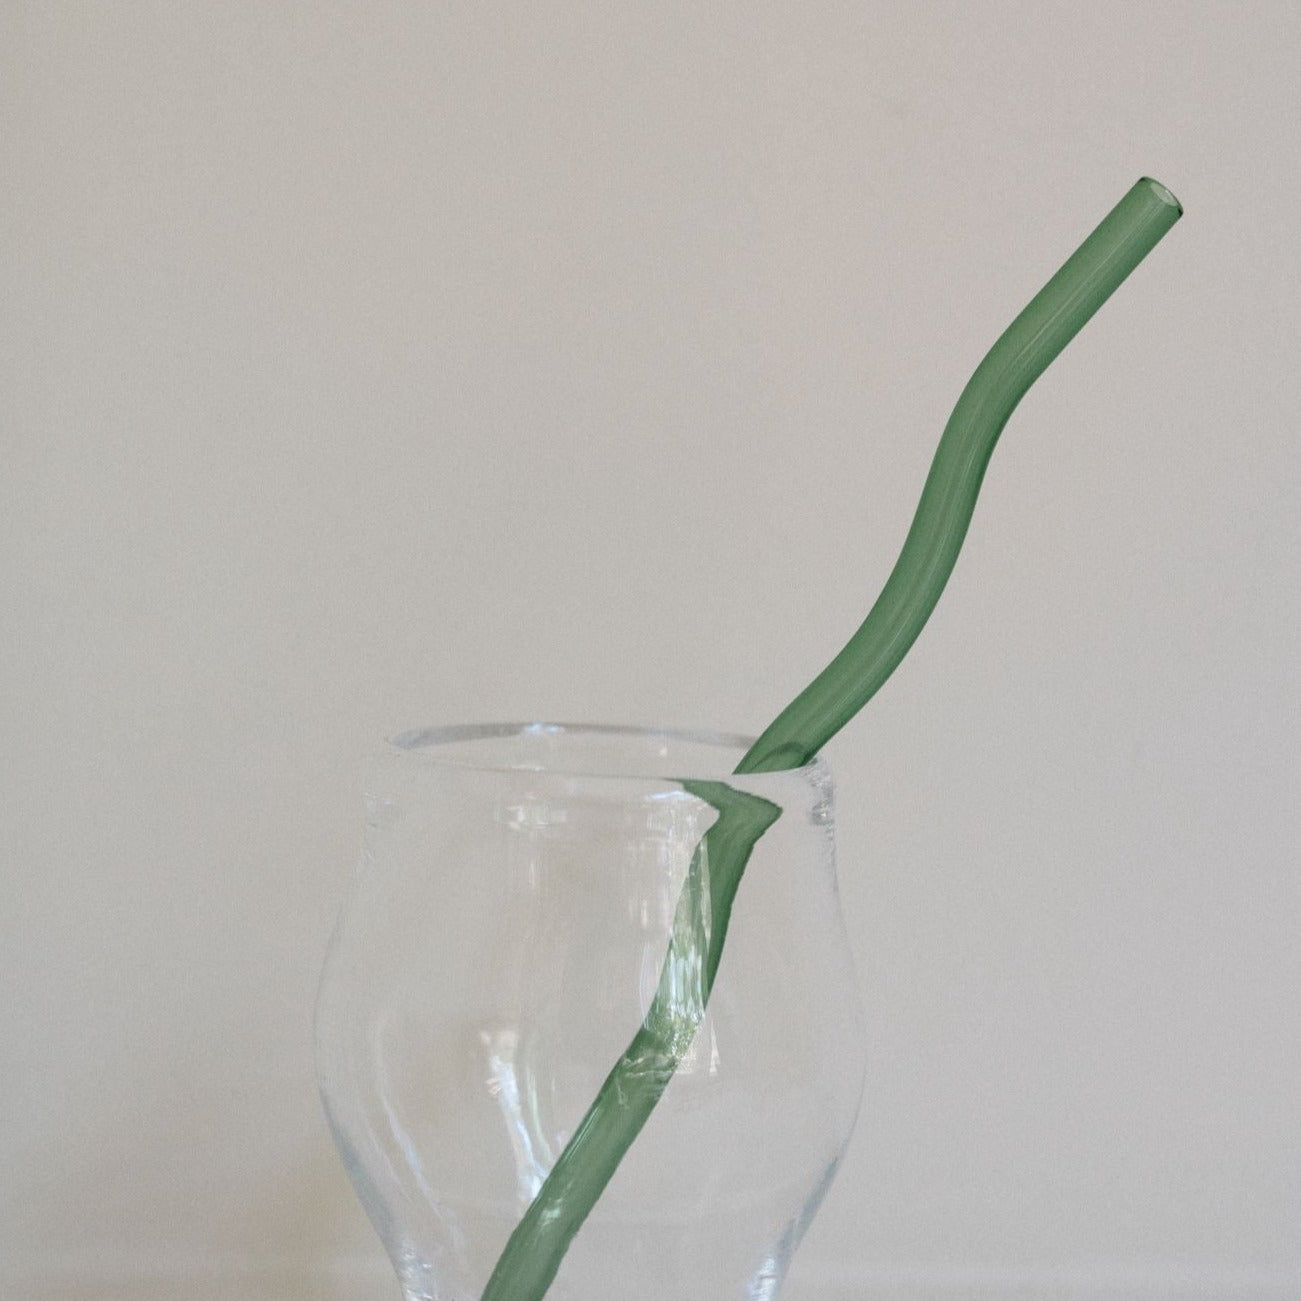 Wavy Glass Straw